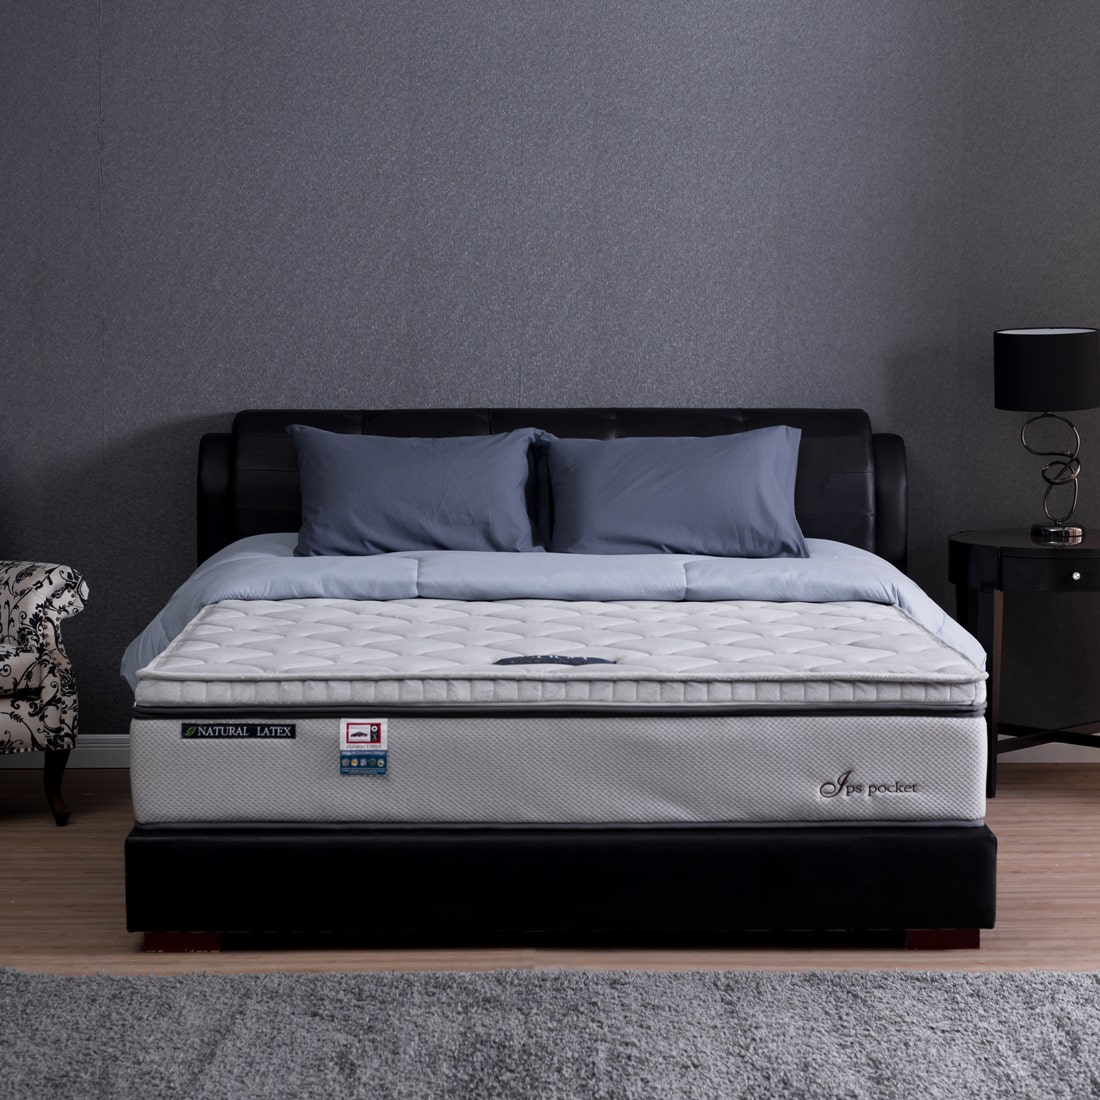 39001258-mattress-bedding-mattresses-pocket-spring-mattress-31